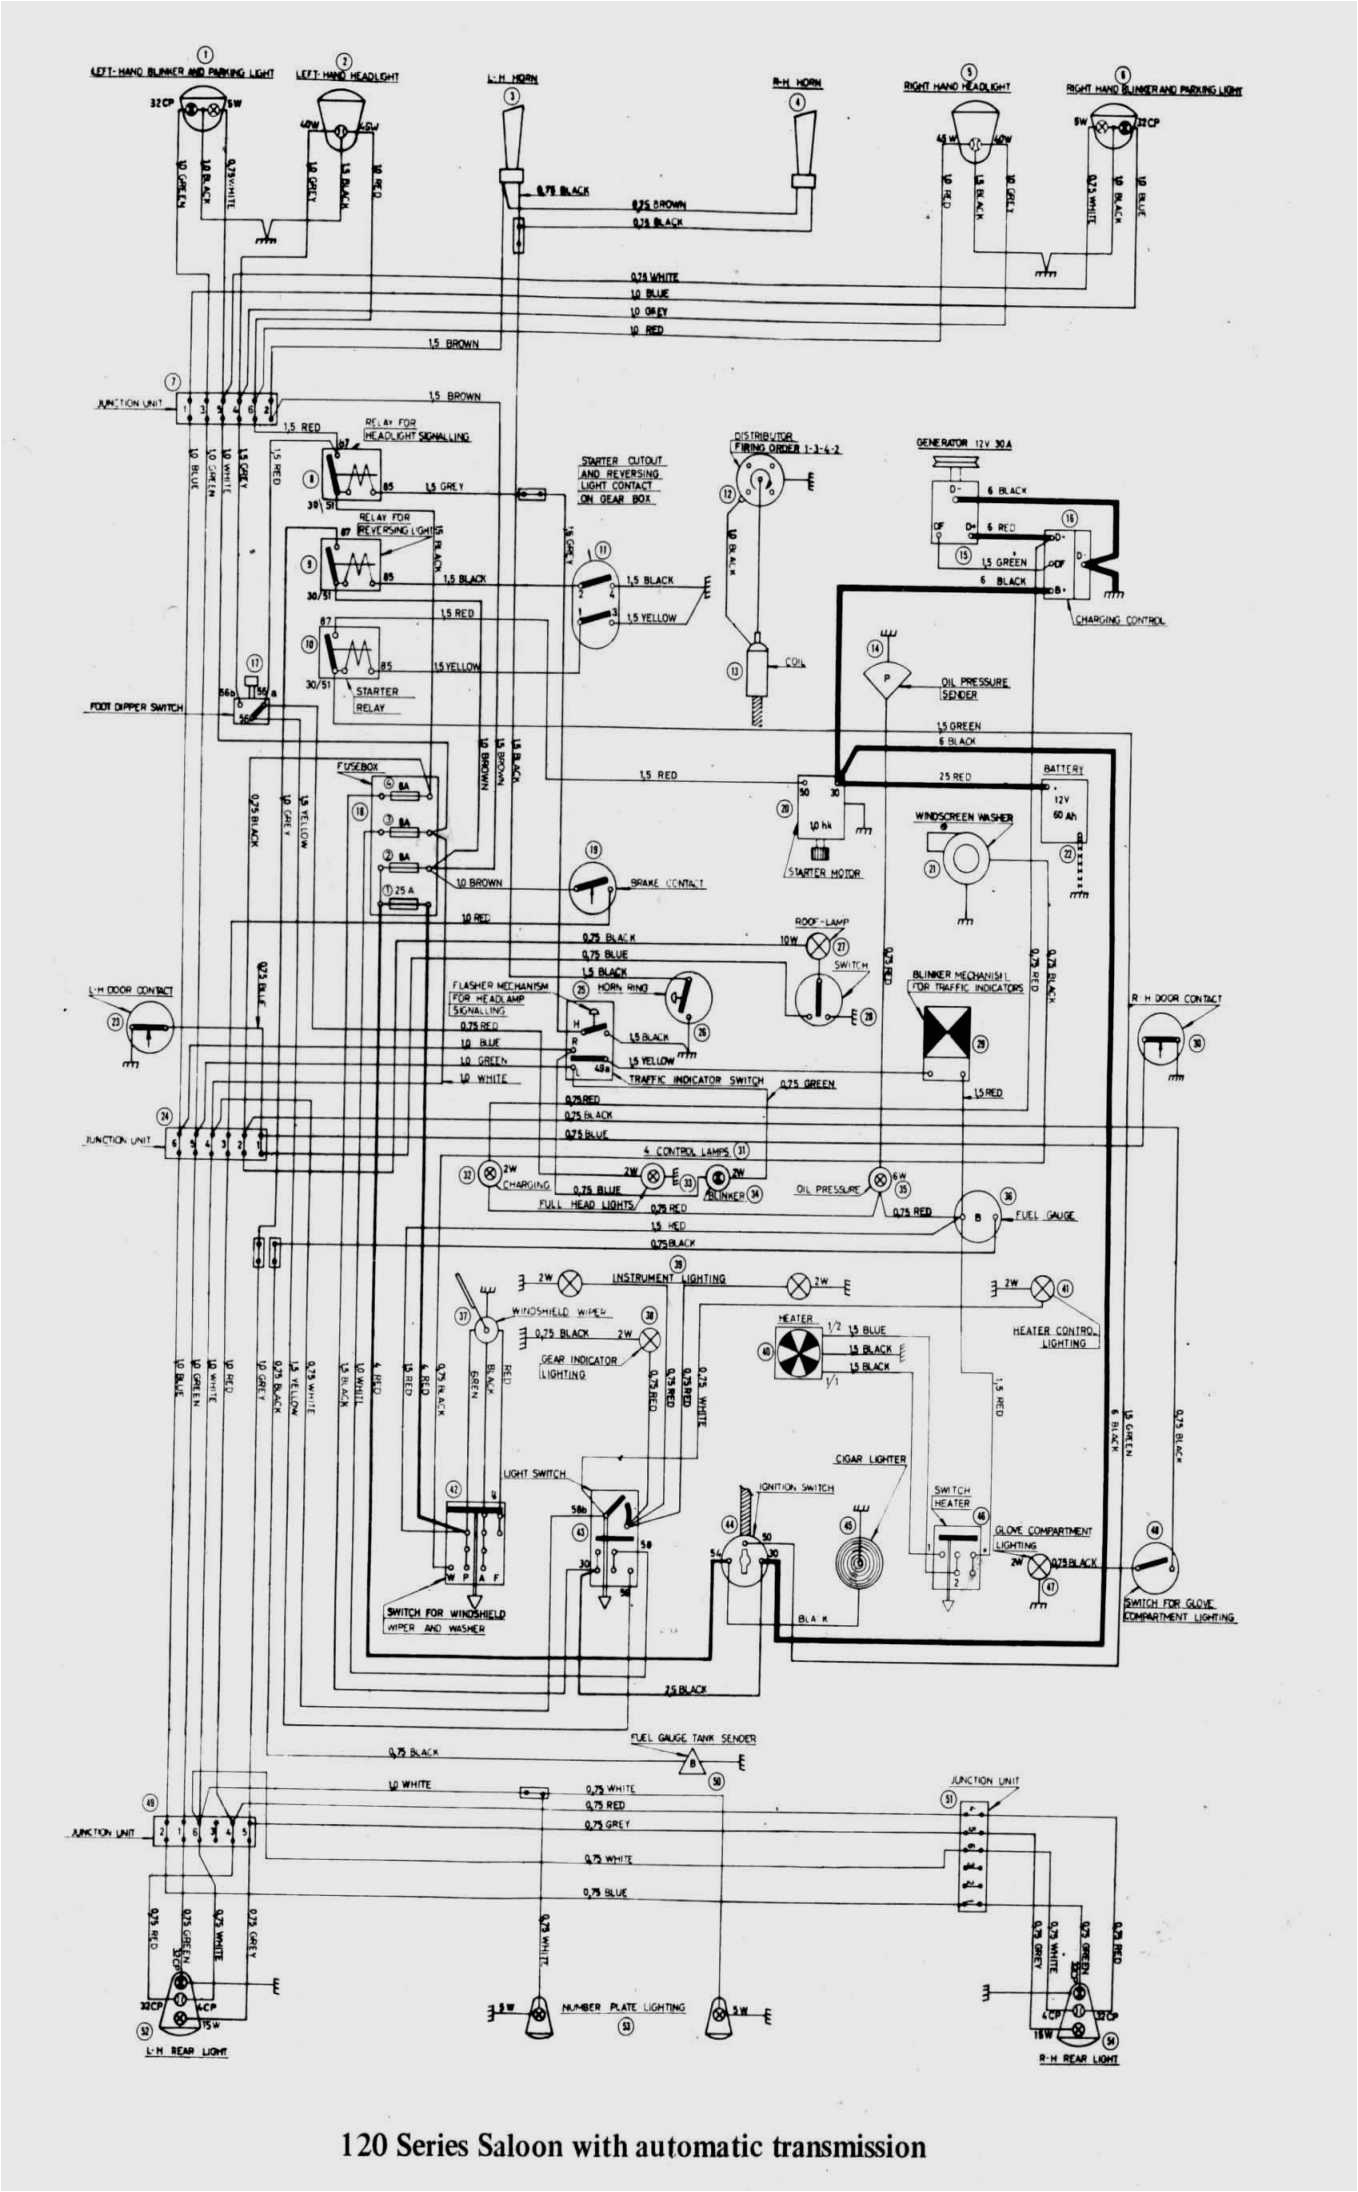 91 club car wiring diagram club car charger receptacle wiring diagram electrical circuit 93 club car wiring diagram club car charger